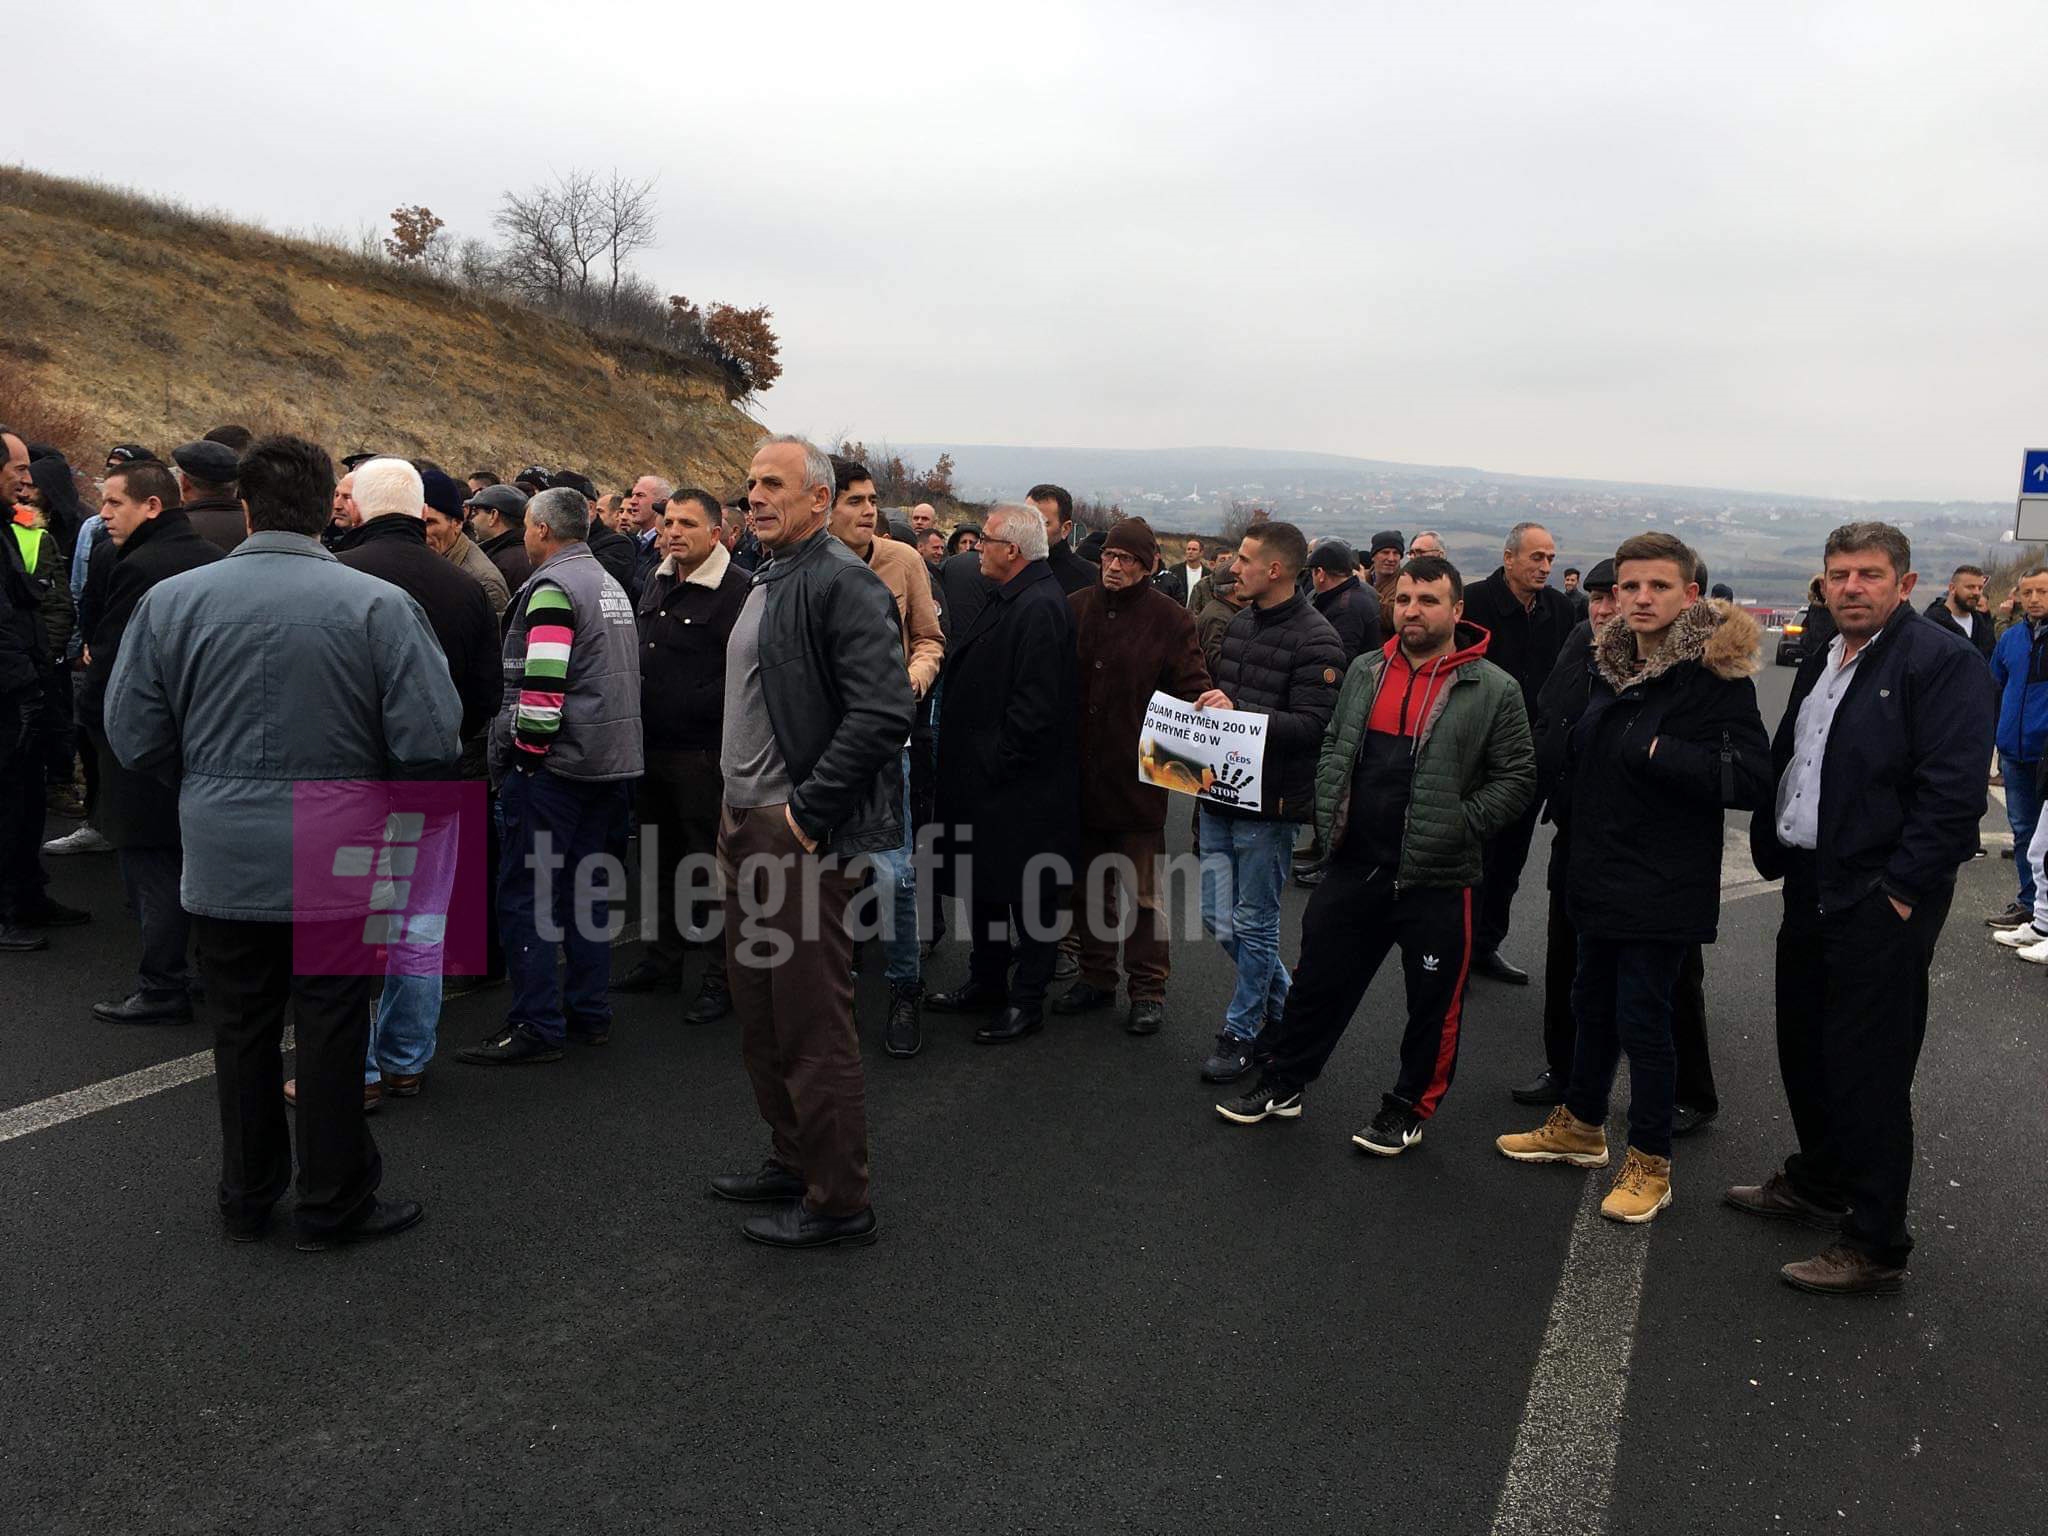 Protestuesit bllokojnë autostradën Pejë-Prishtinë, revoltohen ndaj KEDS-it për furnizim me energji elektrike të dobët